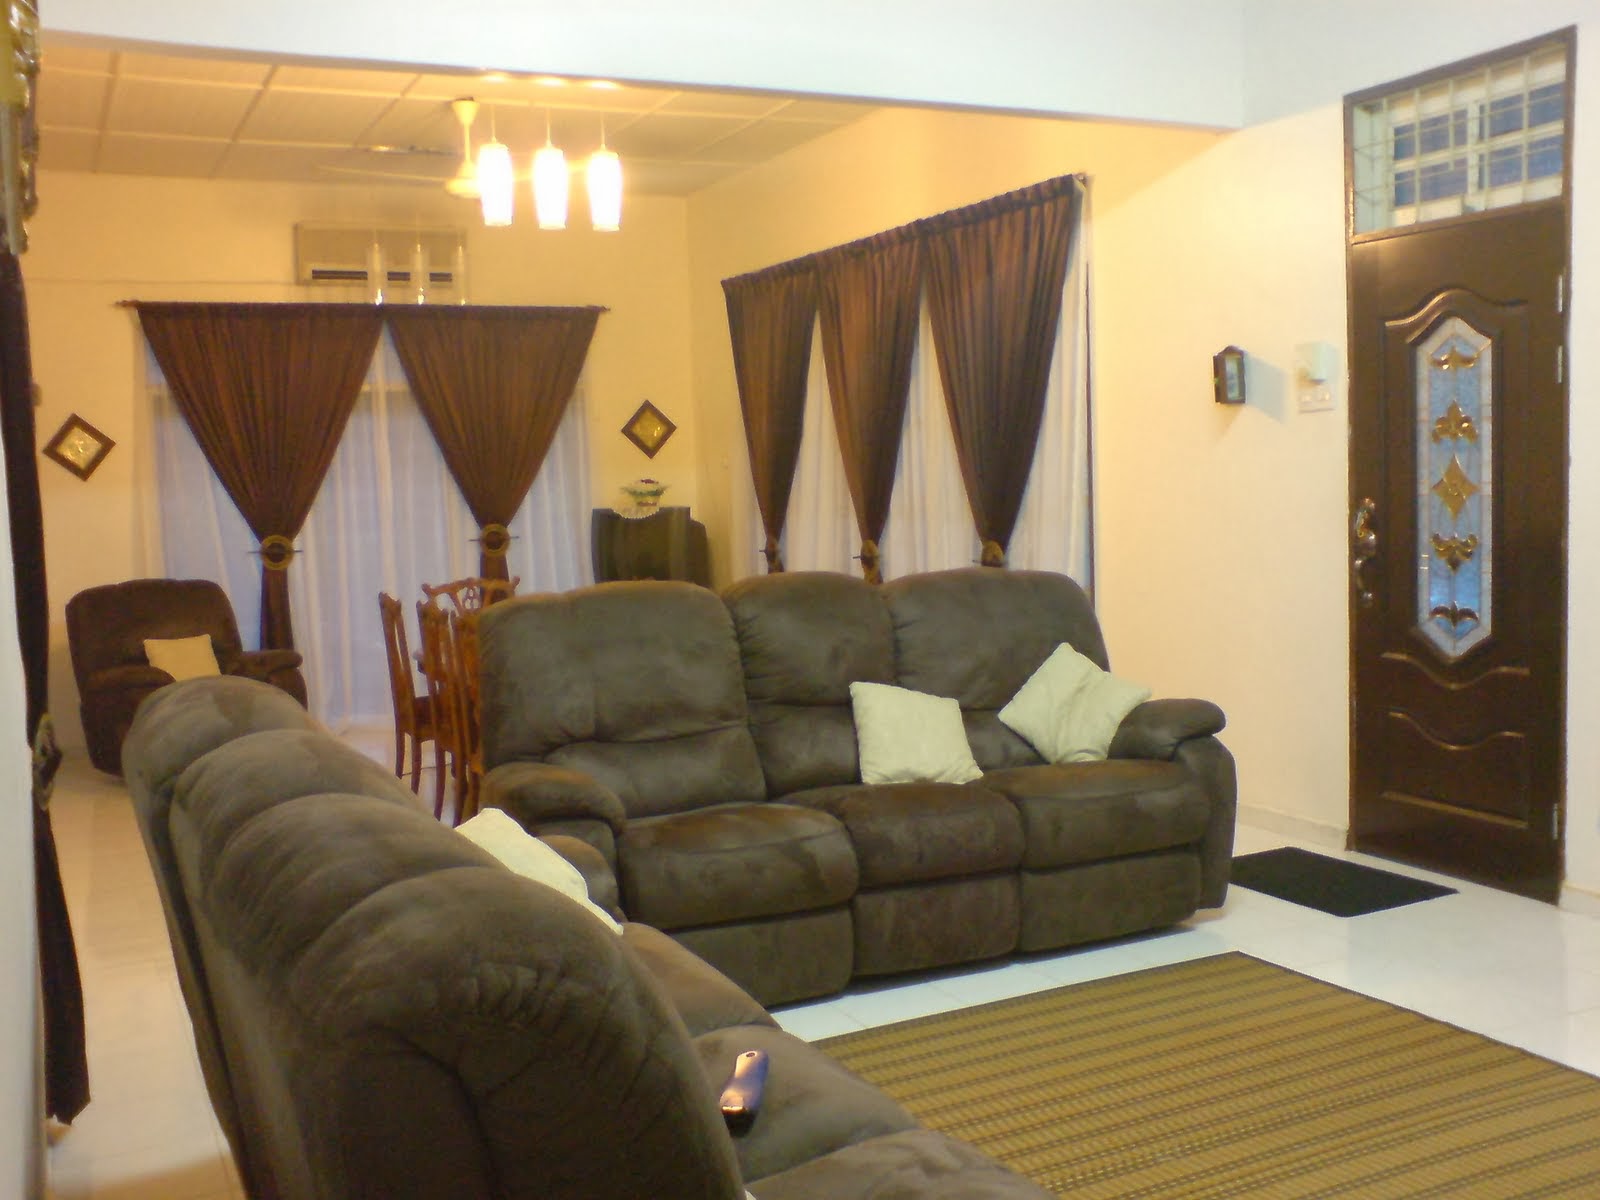 Ide Jual Furniture  Bekas  Hotel Di Bandung  Furniture  